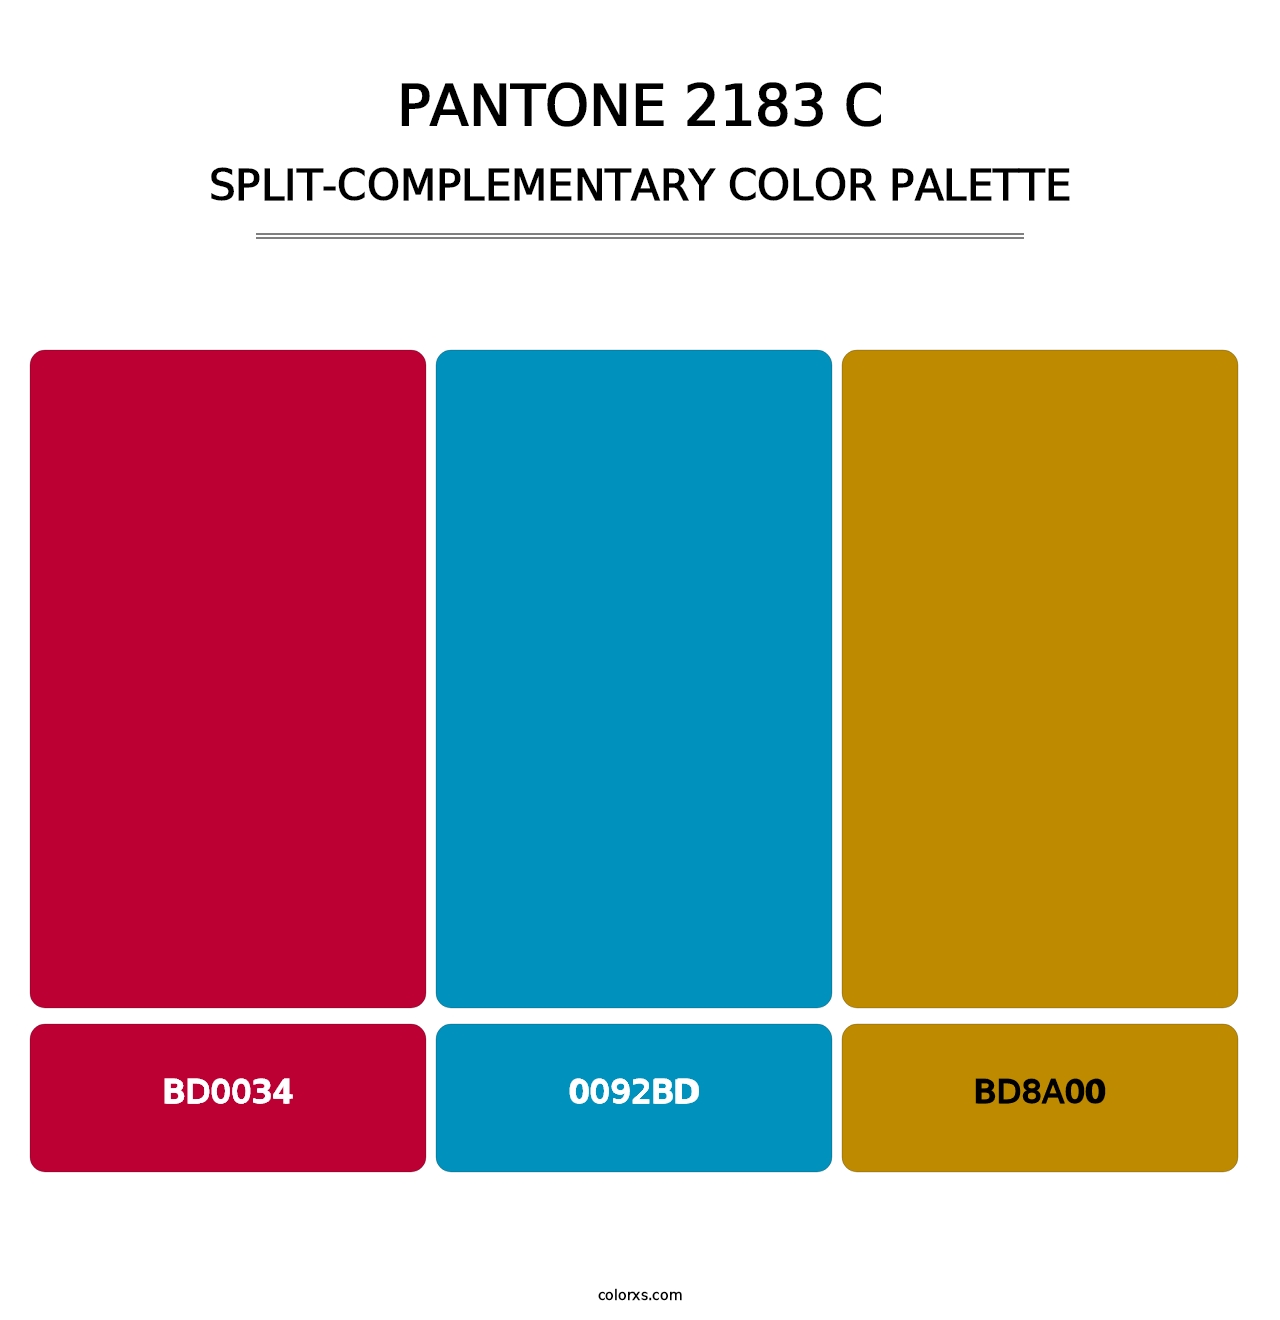 PANTONE 2183 C - Split-Complementary Color Palette